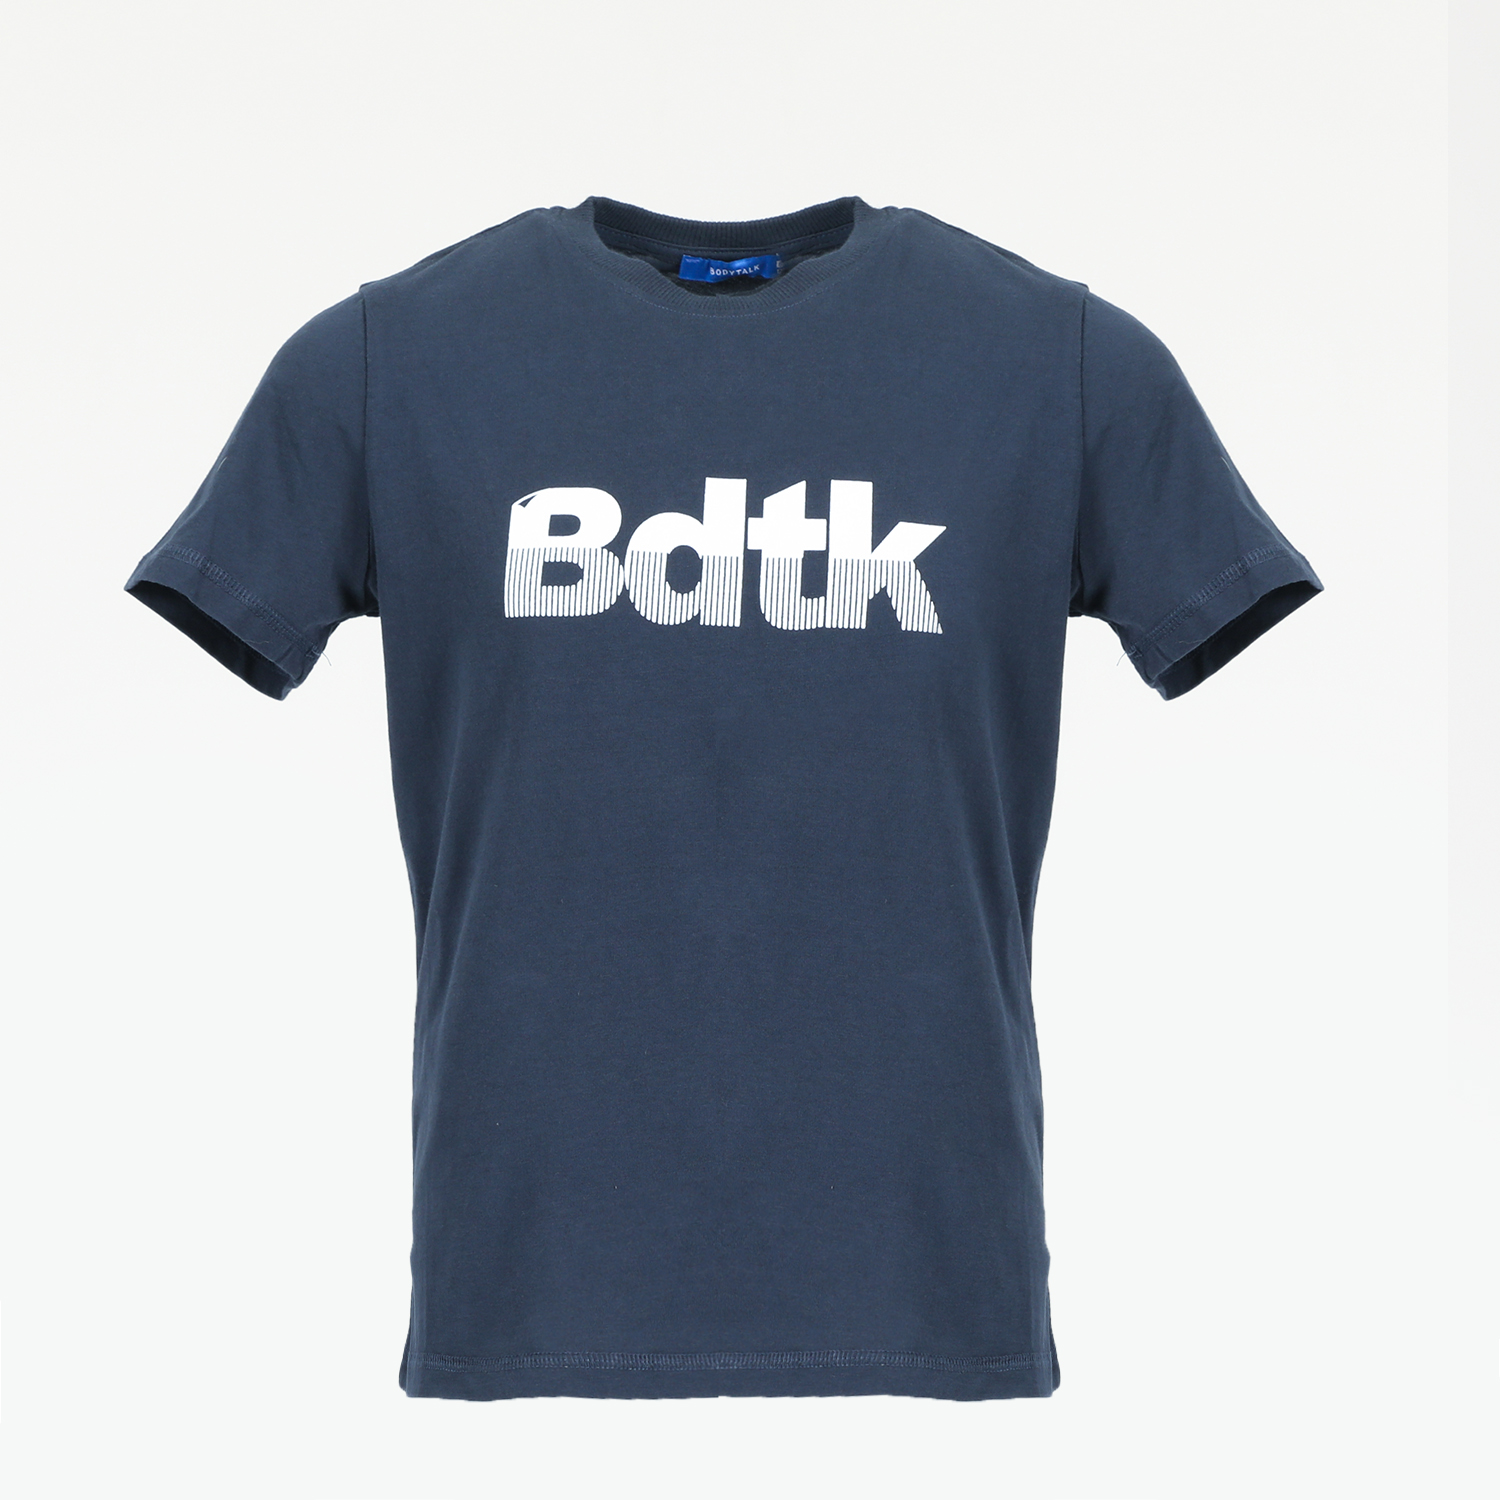 Παιδικά/Boys/Ρούχα/Μπλούζες Κοντομάνικες-Αμάνικες BODYTALK - Παιδικό t-shirt BODYTALK μπλε